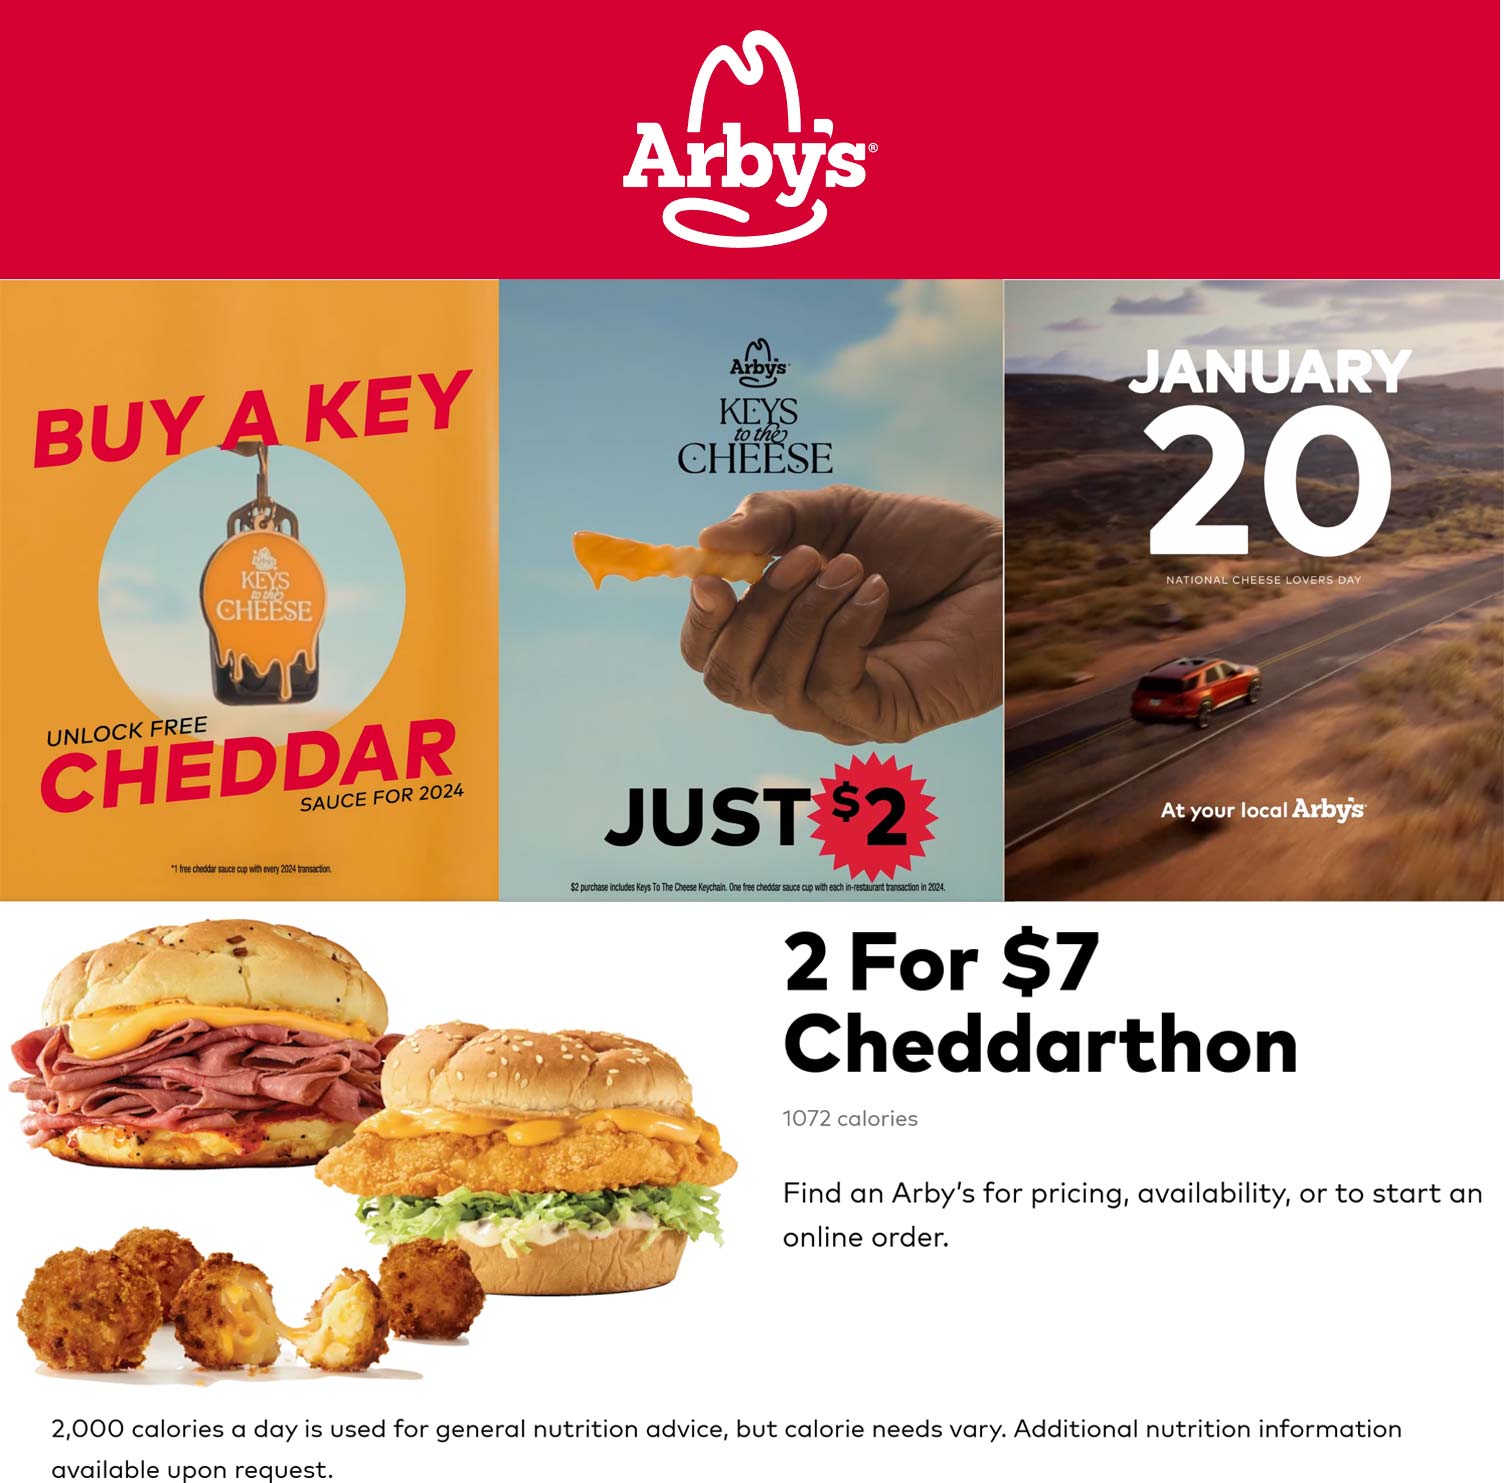 $2 keychain Saturday unlocks free cheddar all year + 2 for $7 cheddarthon at Arbys restaurants #arbys